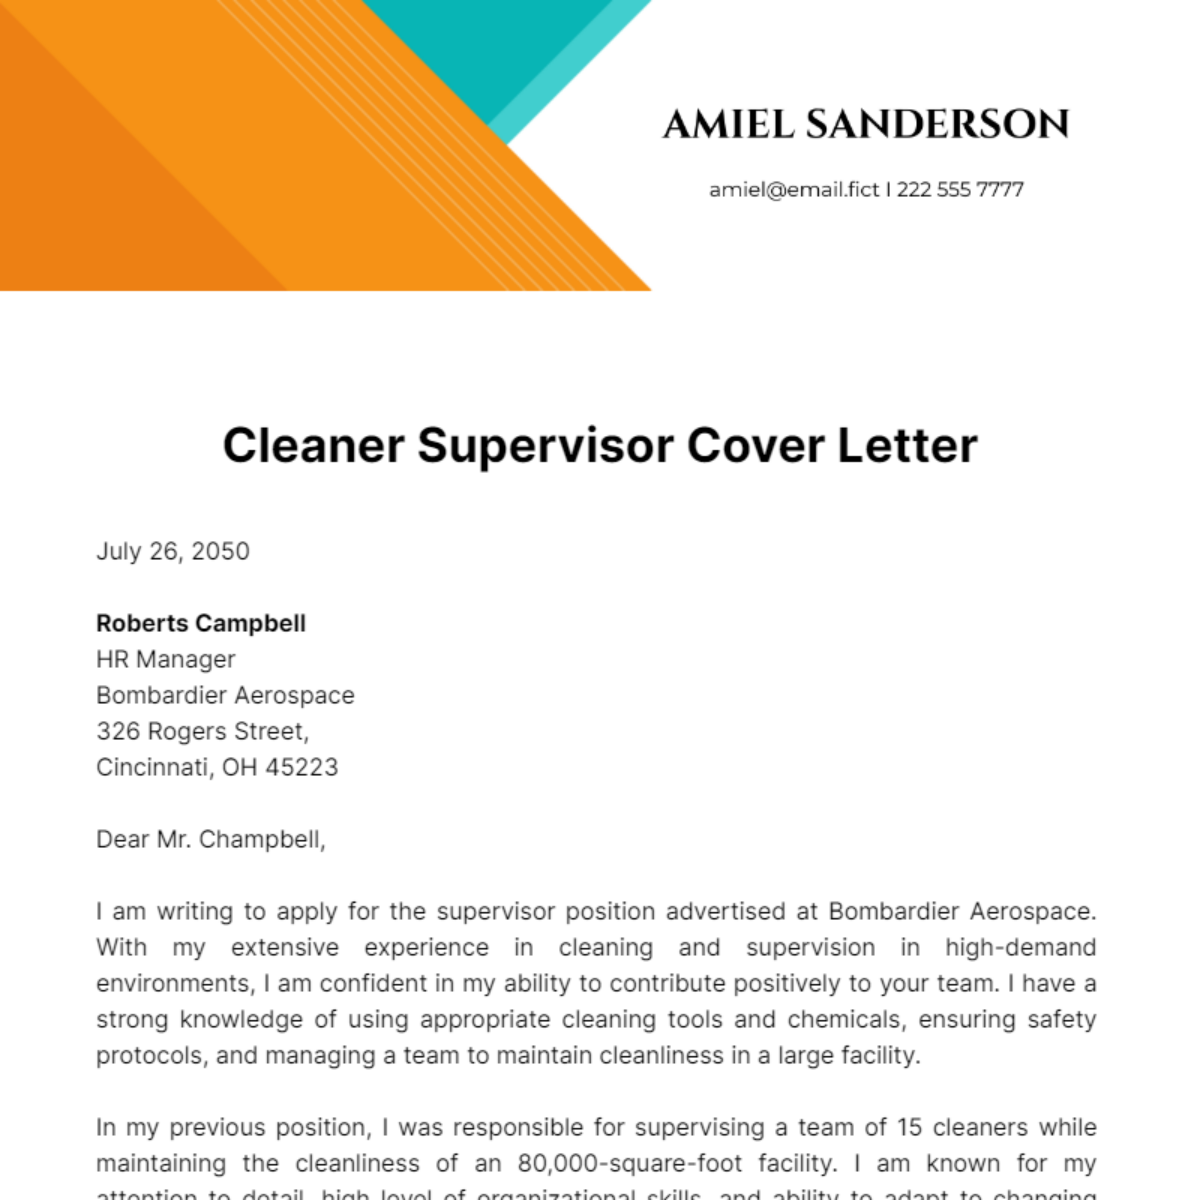 Cleaner Supervisor Cover Letter Template